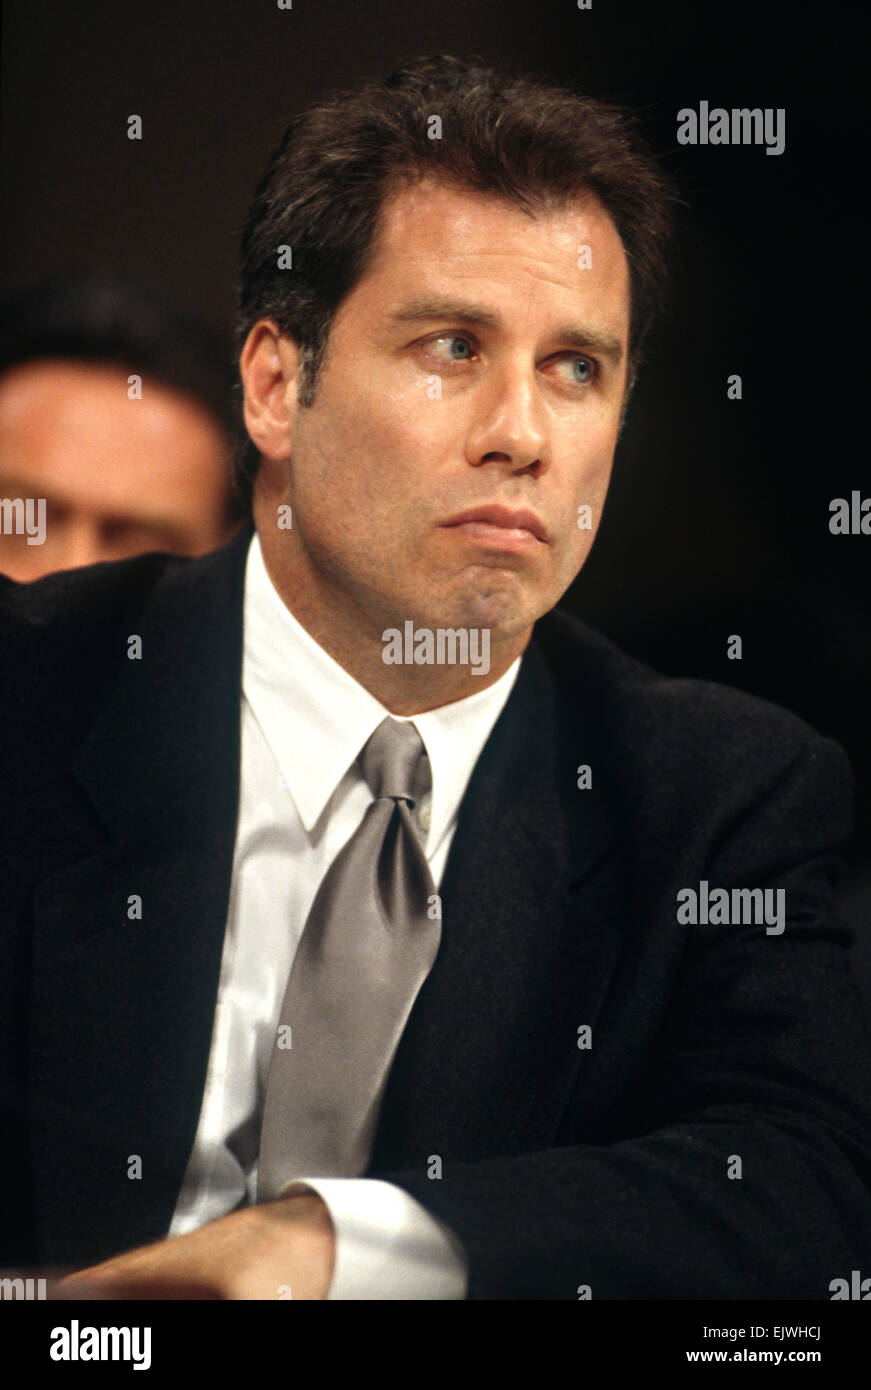 L'acteur John Travolta parle à l'appui de la Scientologie au cours des témoignages au congrès le 18 septembre 1997 à Washington, DC. Banque D'Images